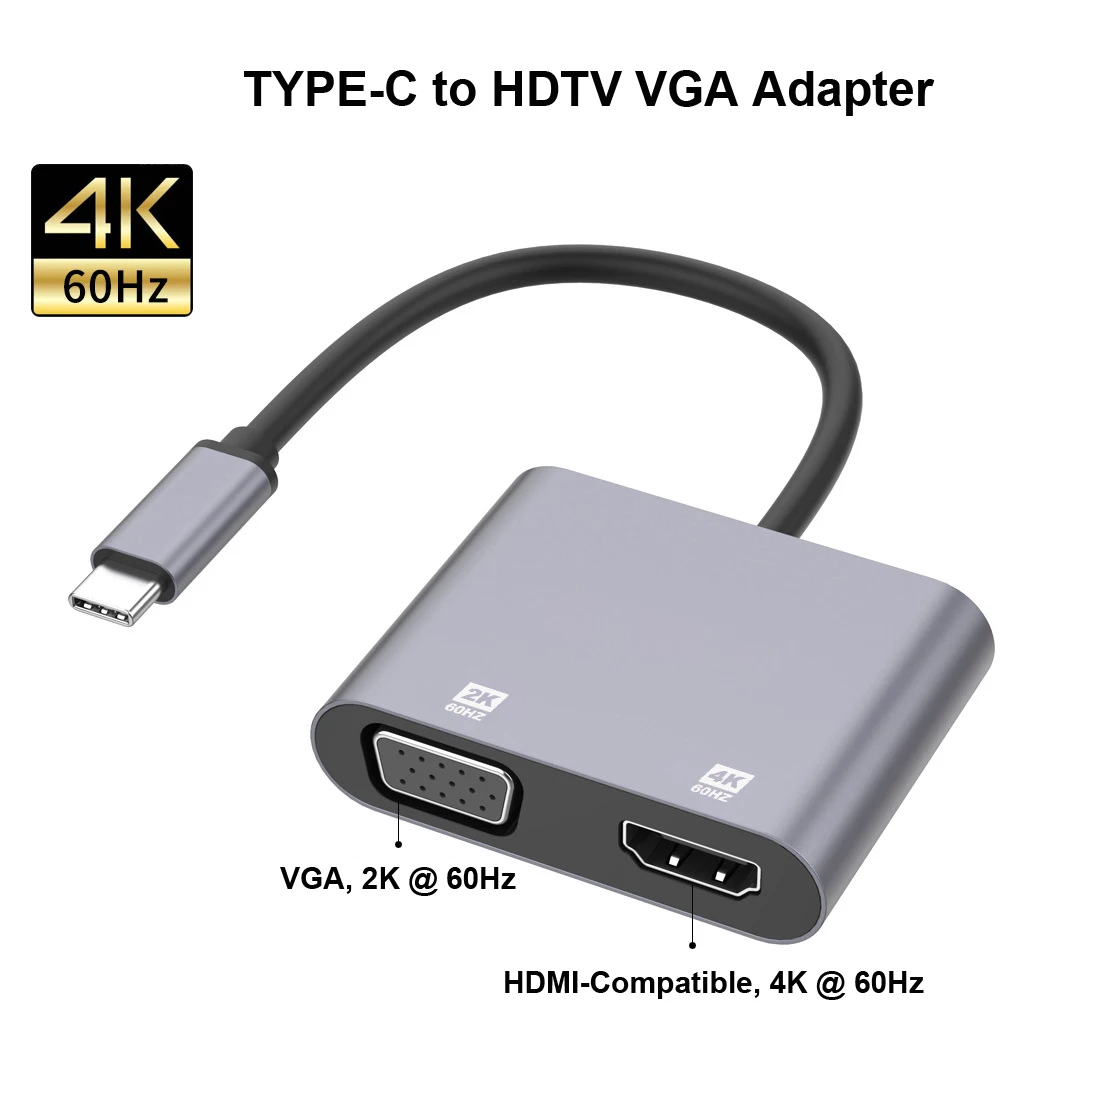 Адаптер VGA, совместимый с двумя портами USB tpye c и 4K HDTV